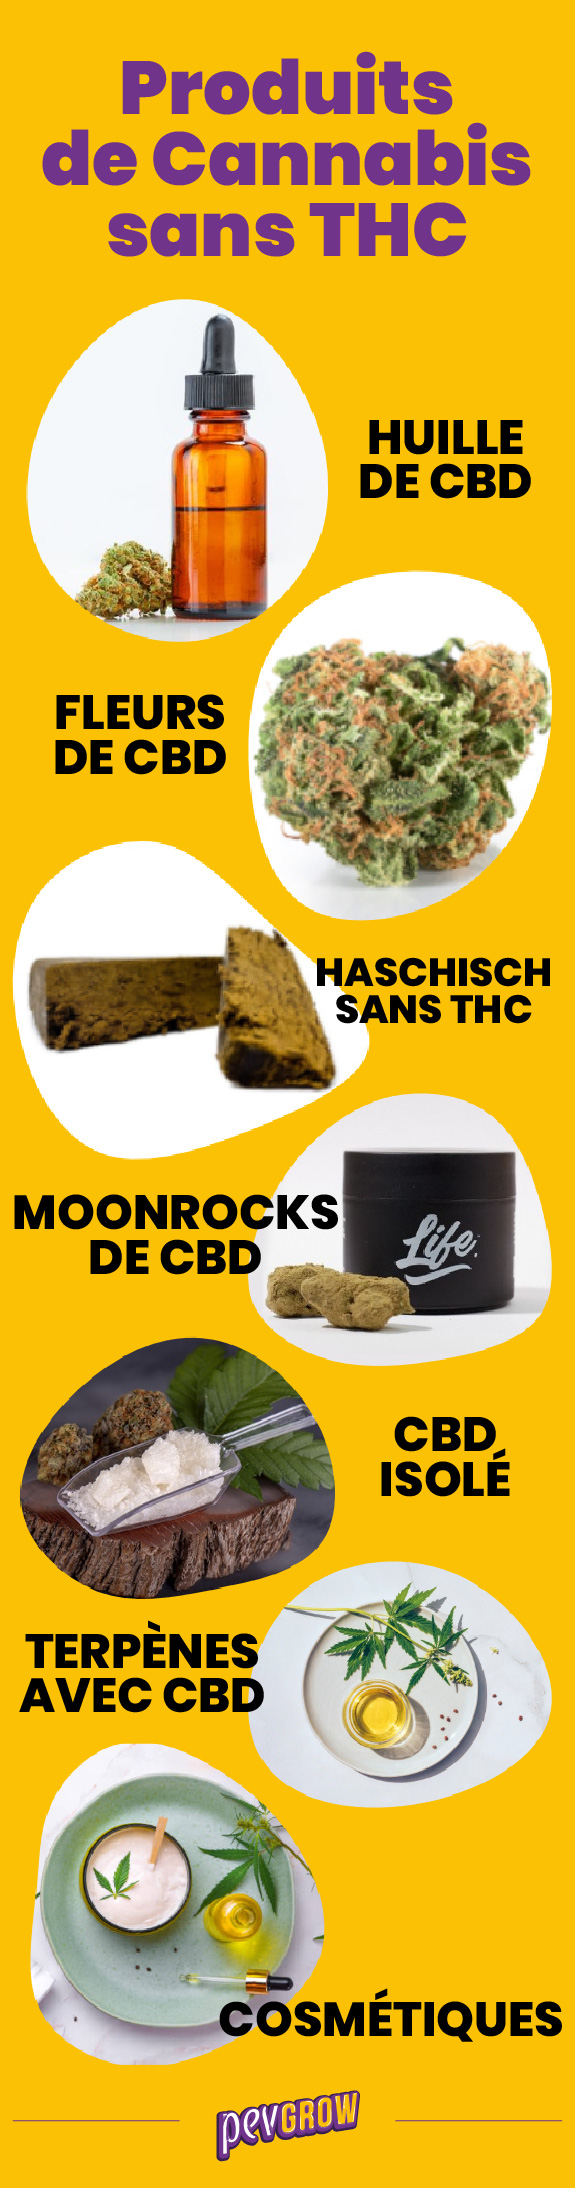 Liste des produits du cannabis sans THC